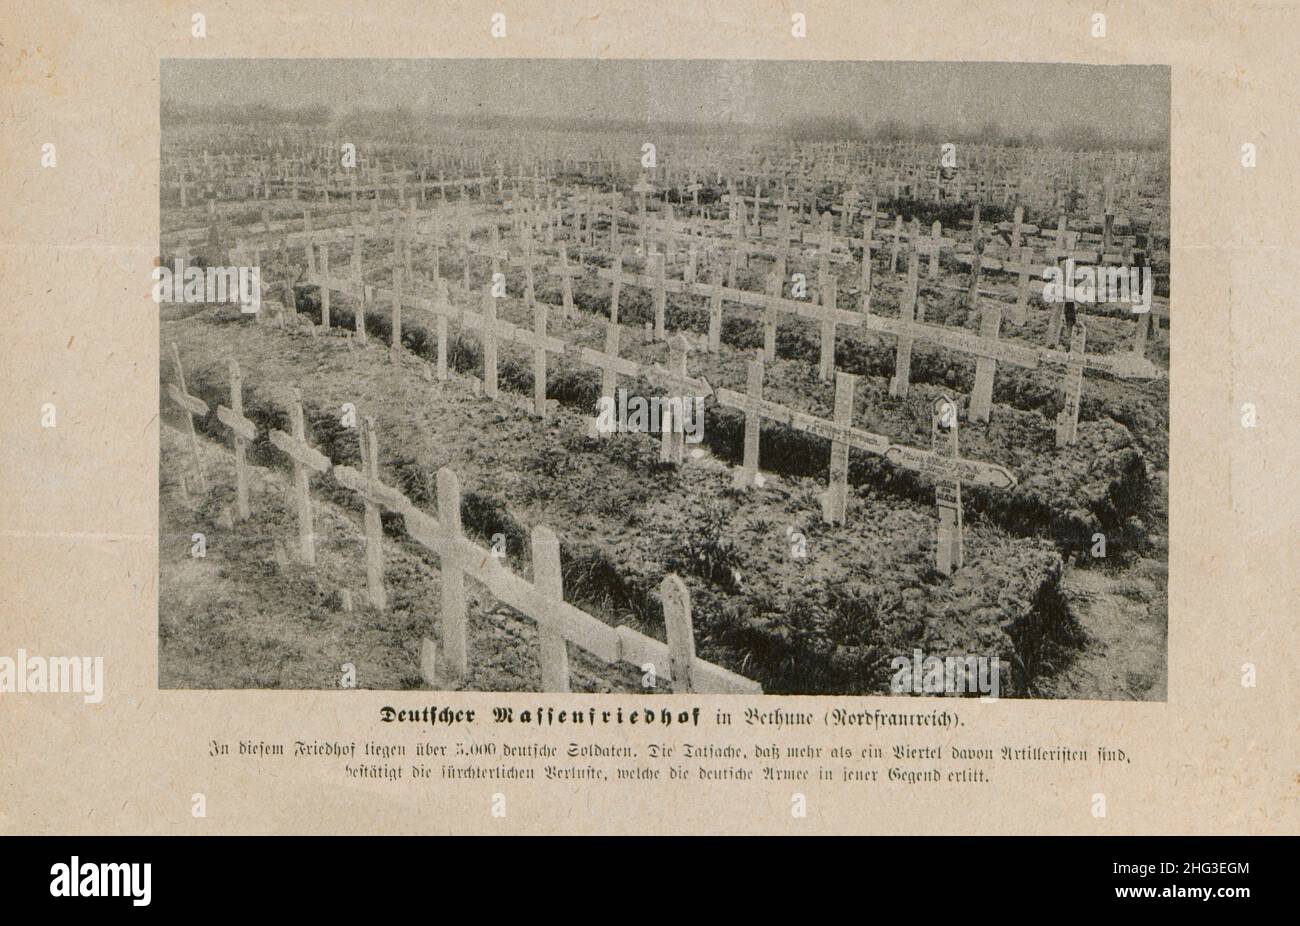 Illustrazione d'epoca della prima guerra mondiale tomba di massa tedesca a Bethune (Francia settentrionale): Ci sono oltre 5.000 soldati tedeschi in questo cimitero. 1914-1918 Foto Stock